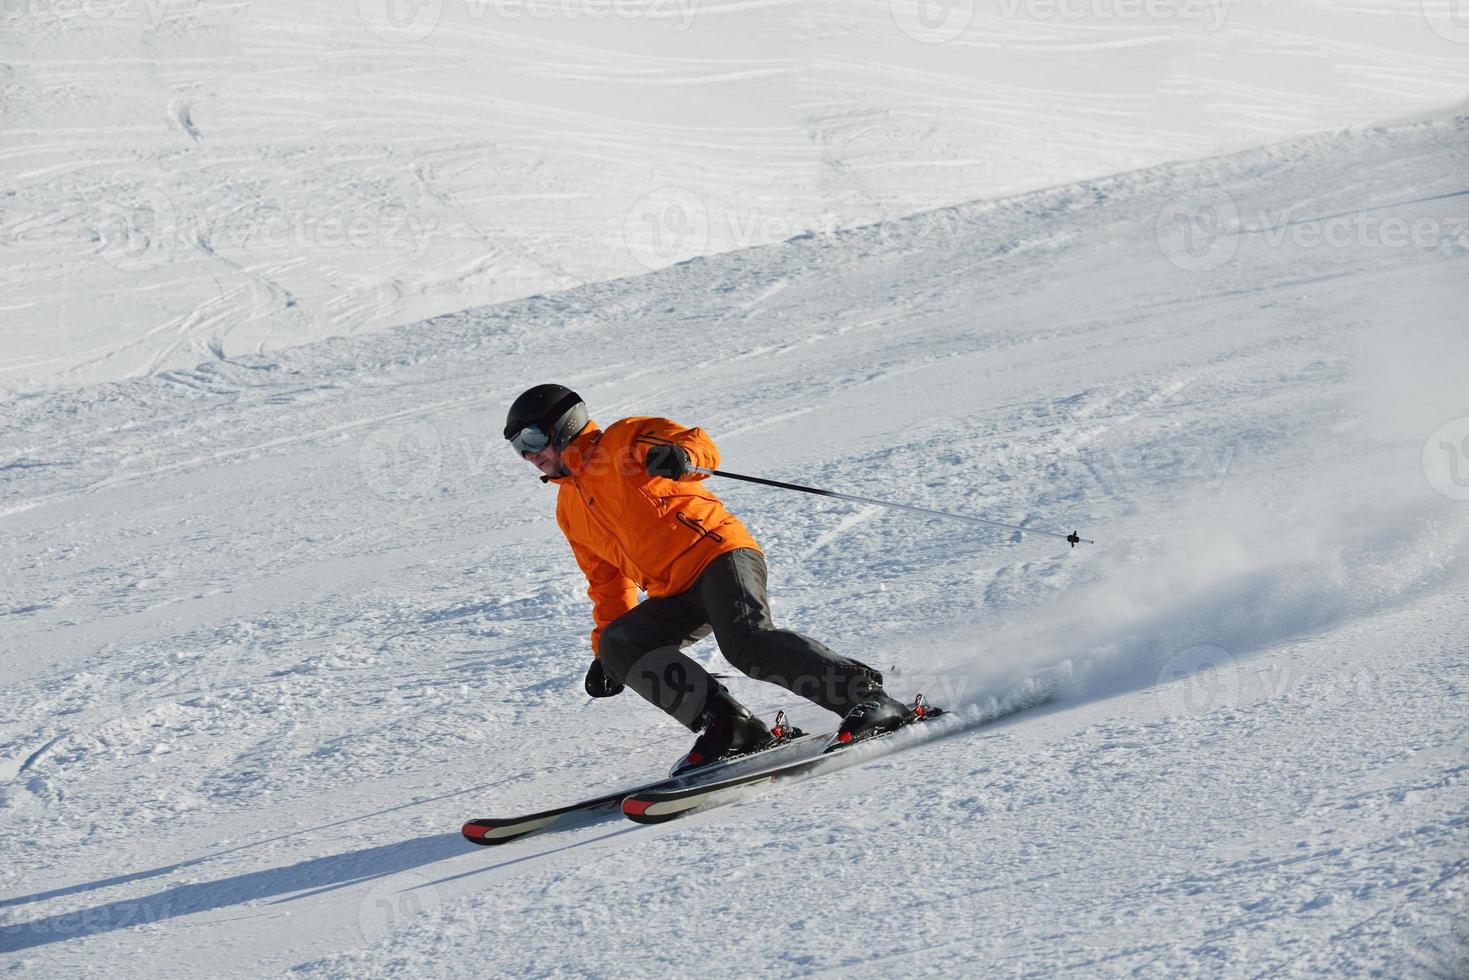 Skiers on mountain photo